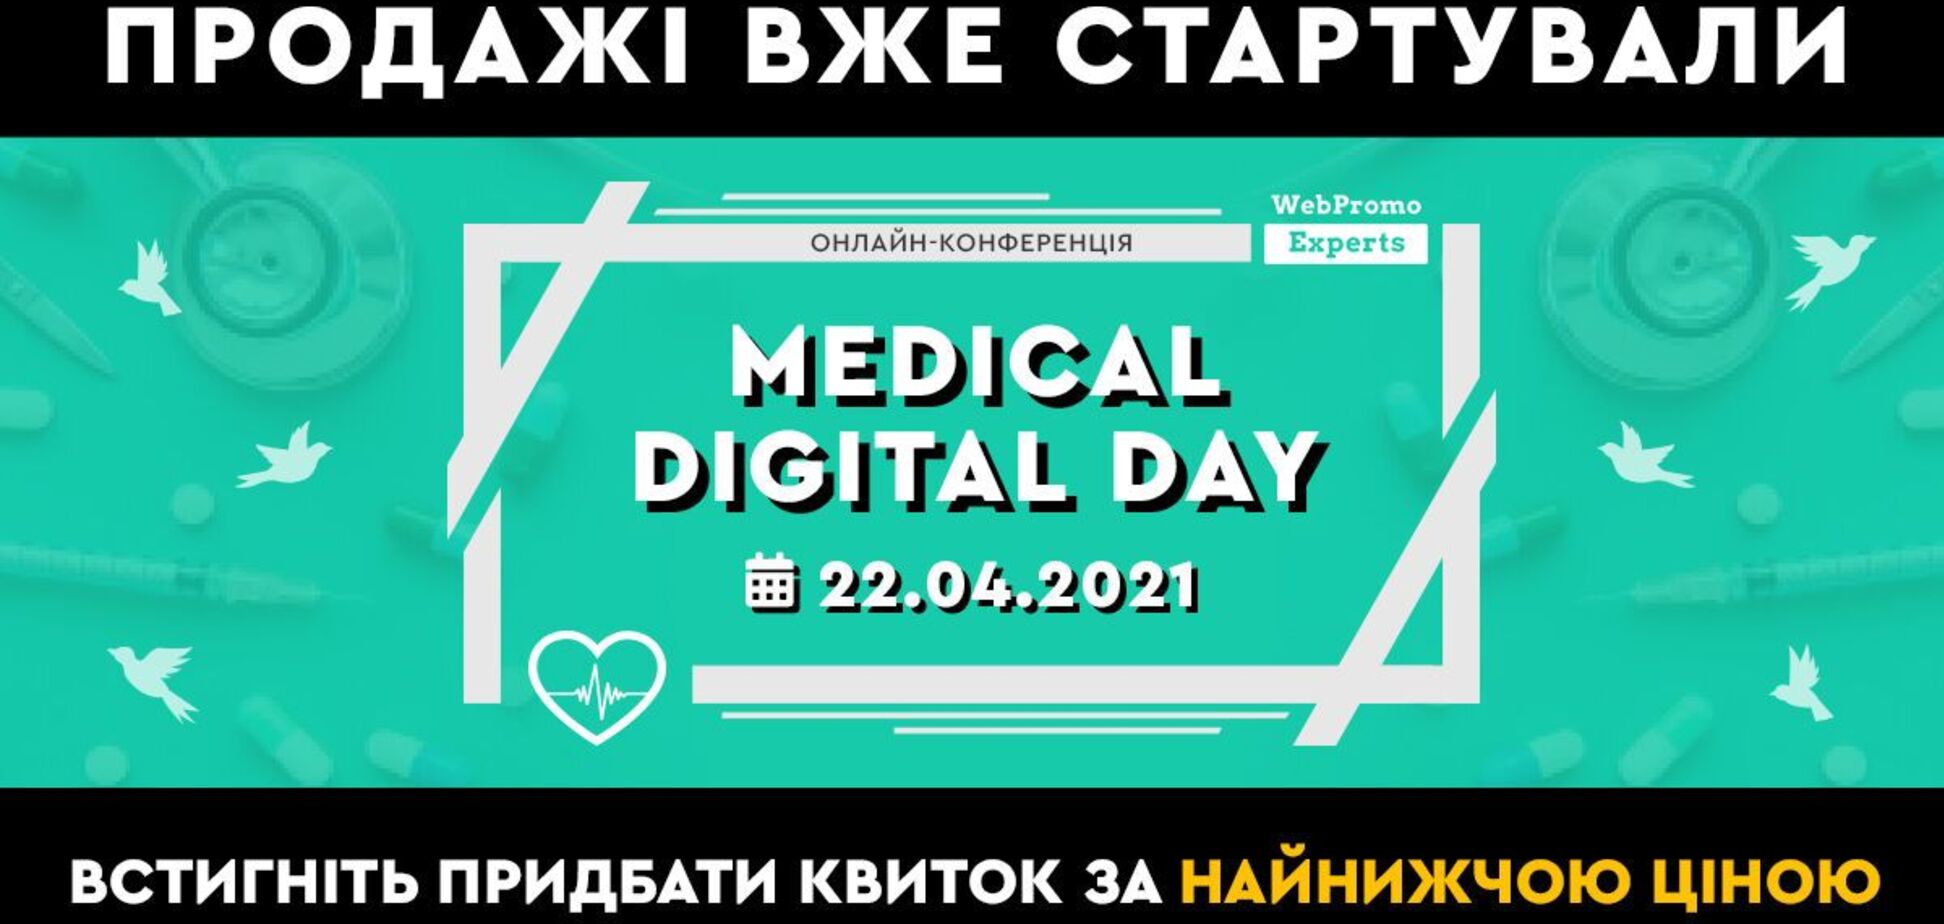 Medical Digital Day: эксперты расскажут, как эффективно продвигать медицинские клиники и услуги онлайн